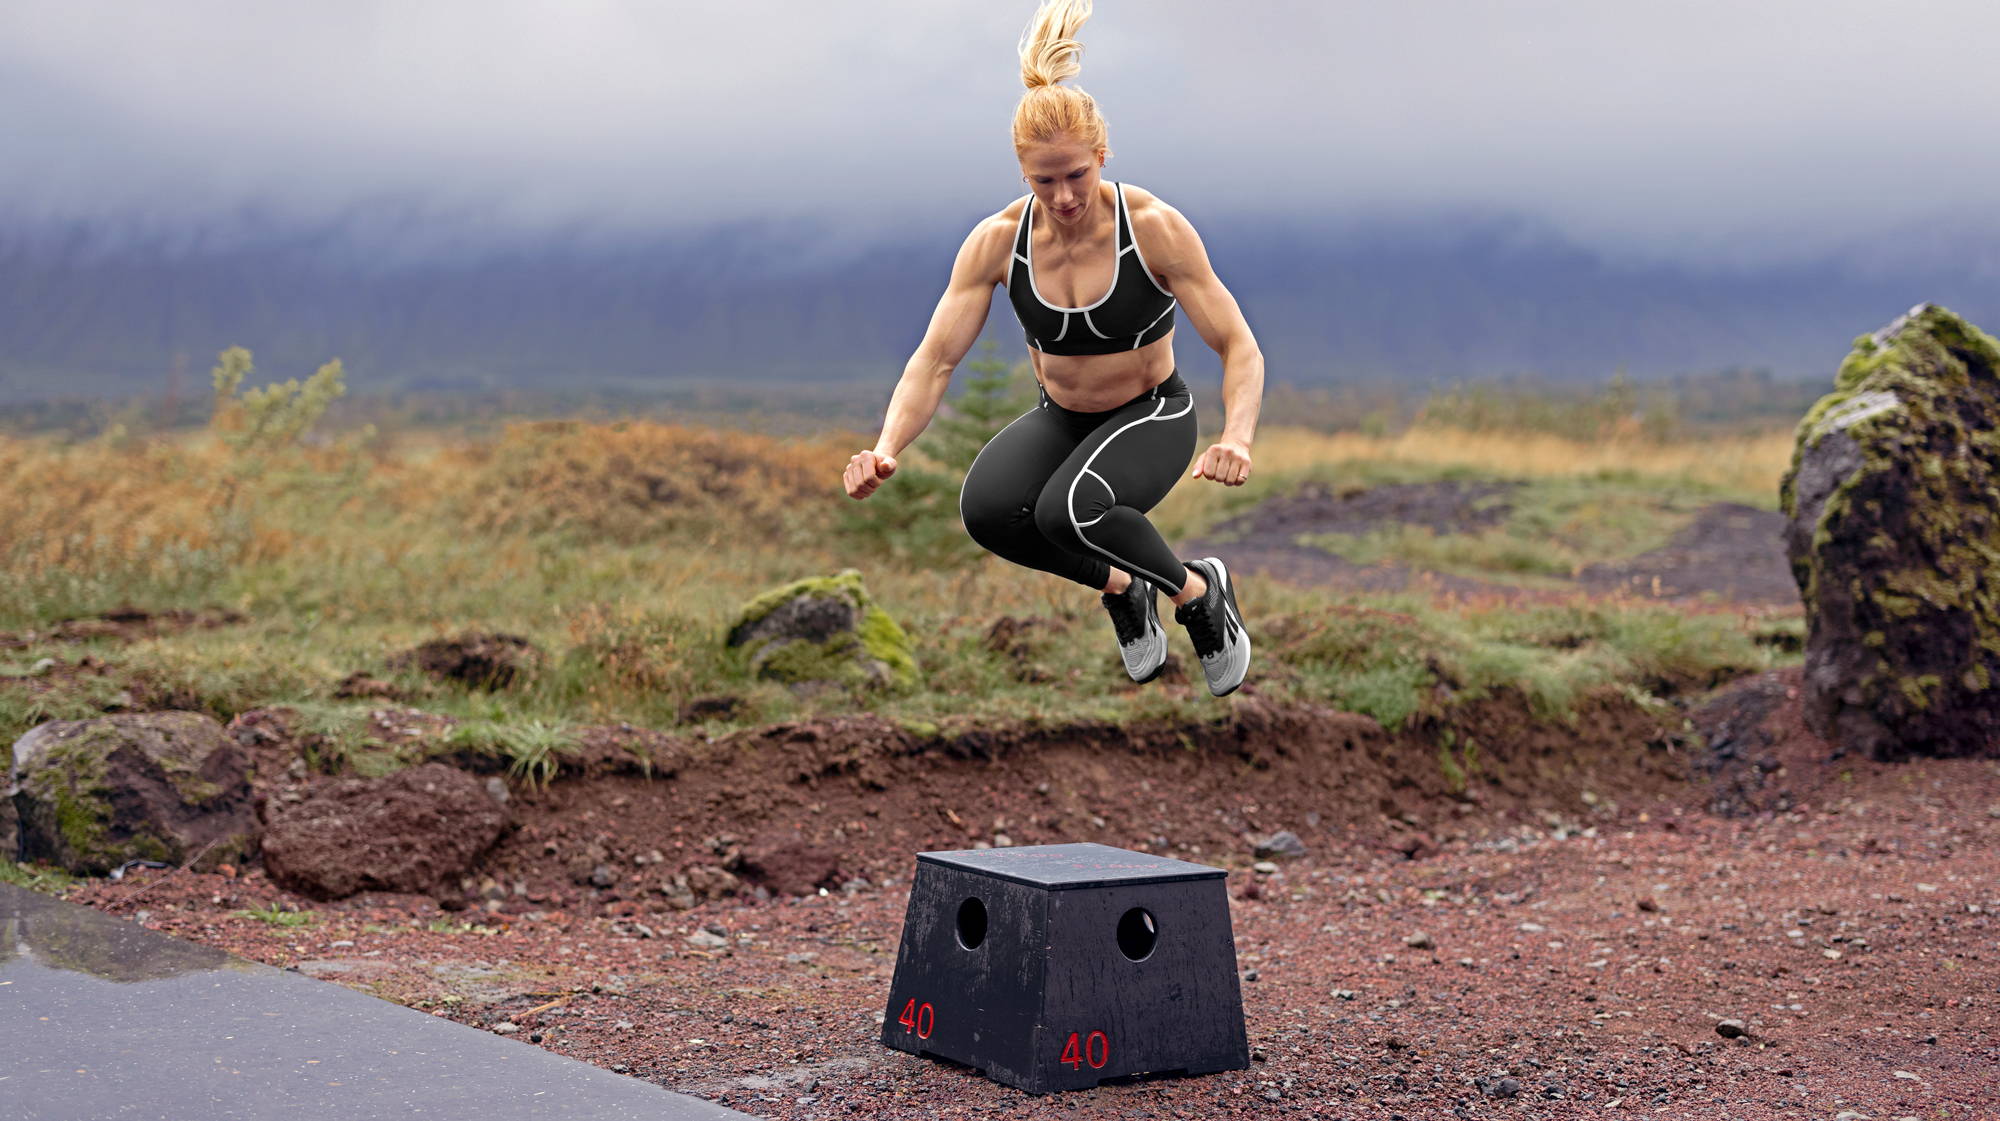 annie thorisdottir jumping over a box jump in the new reebok nano x2 training shoe